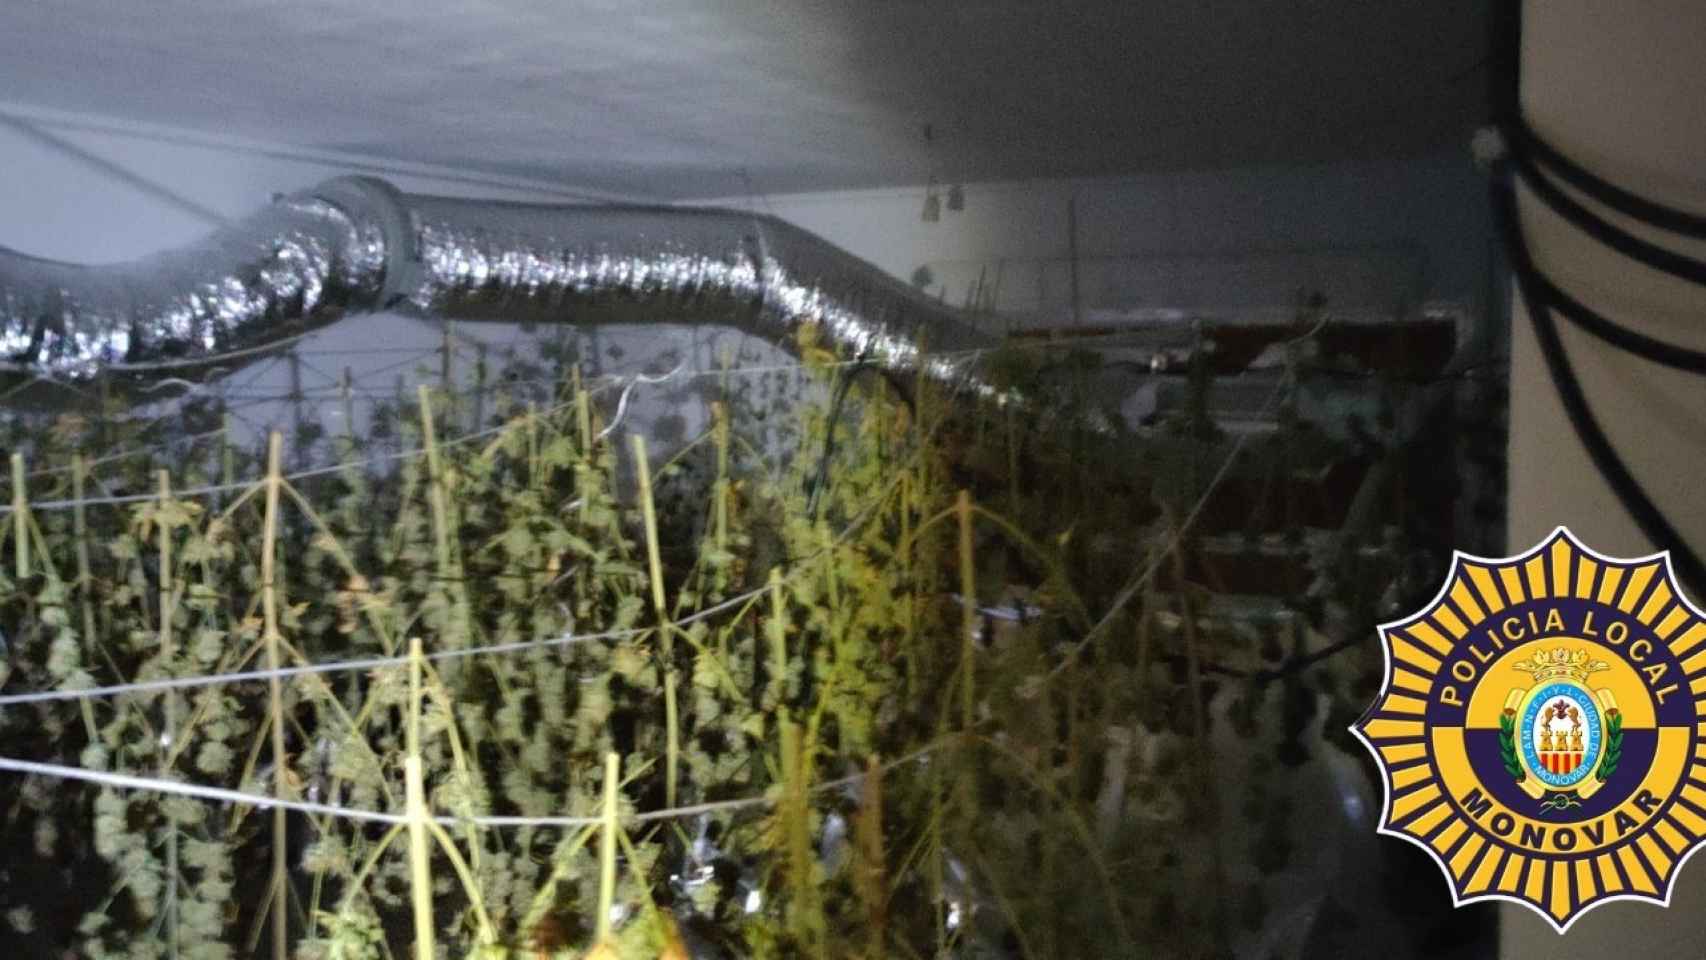 Una de las plantaciones de marihuana halladas.